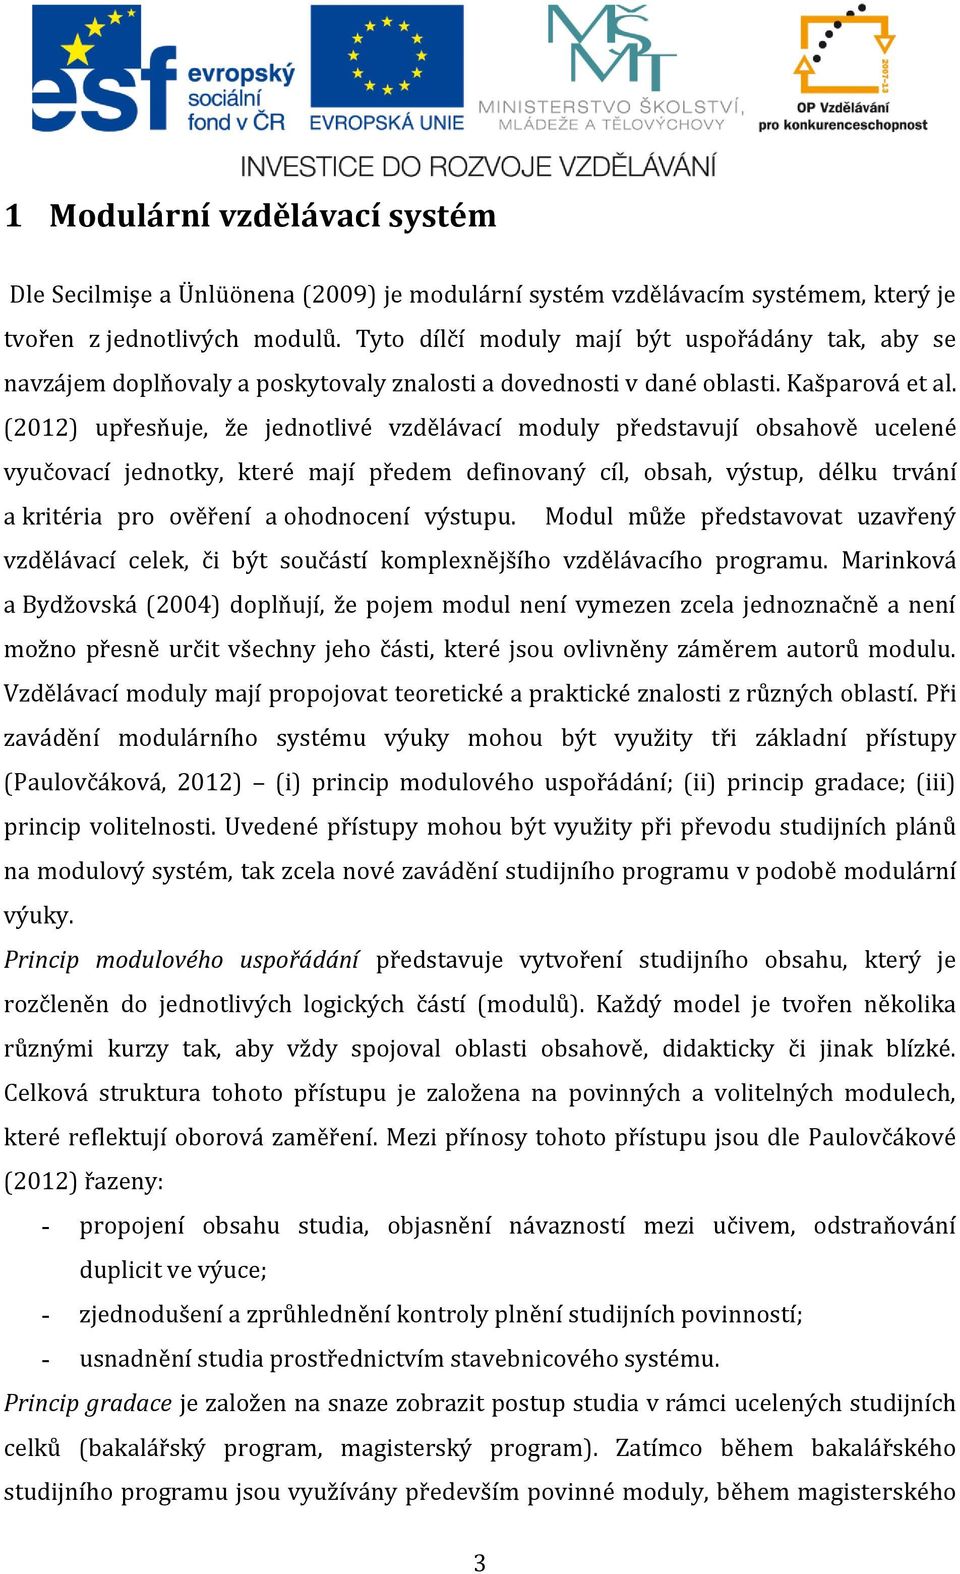 (2012) upřesňuje, že jednotlivé vzdělávací moduly představují obsahově ucelené vyučovací jednotky, které mají předem definovaný cíl, obsah, výstup, délku trvání a kritéria pro ověření a ohodnocení